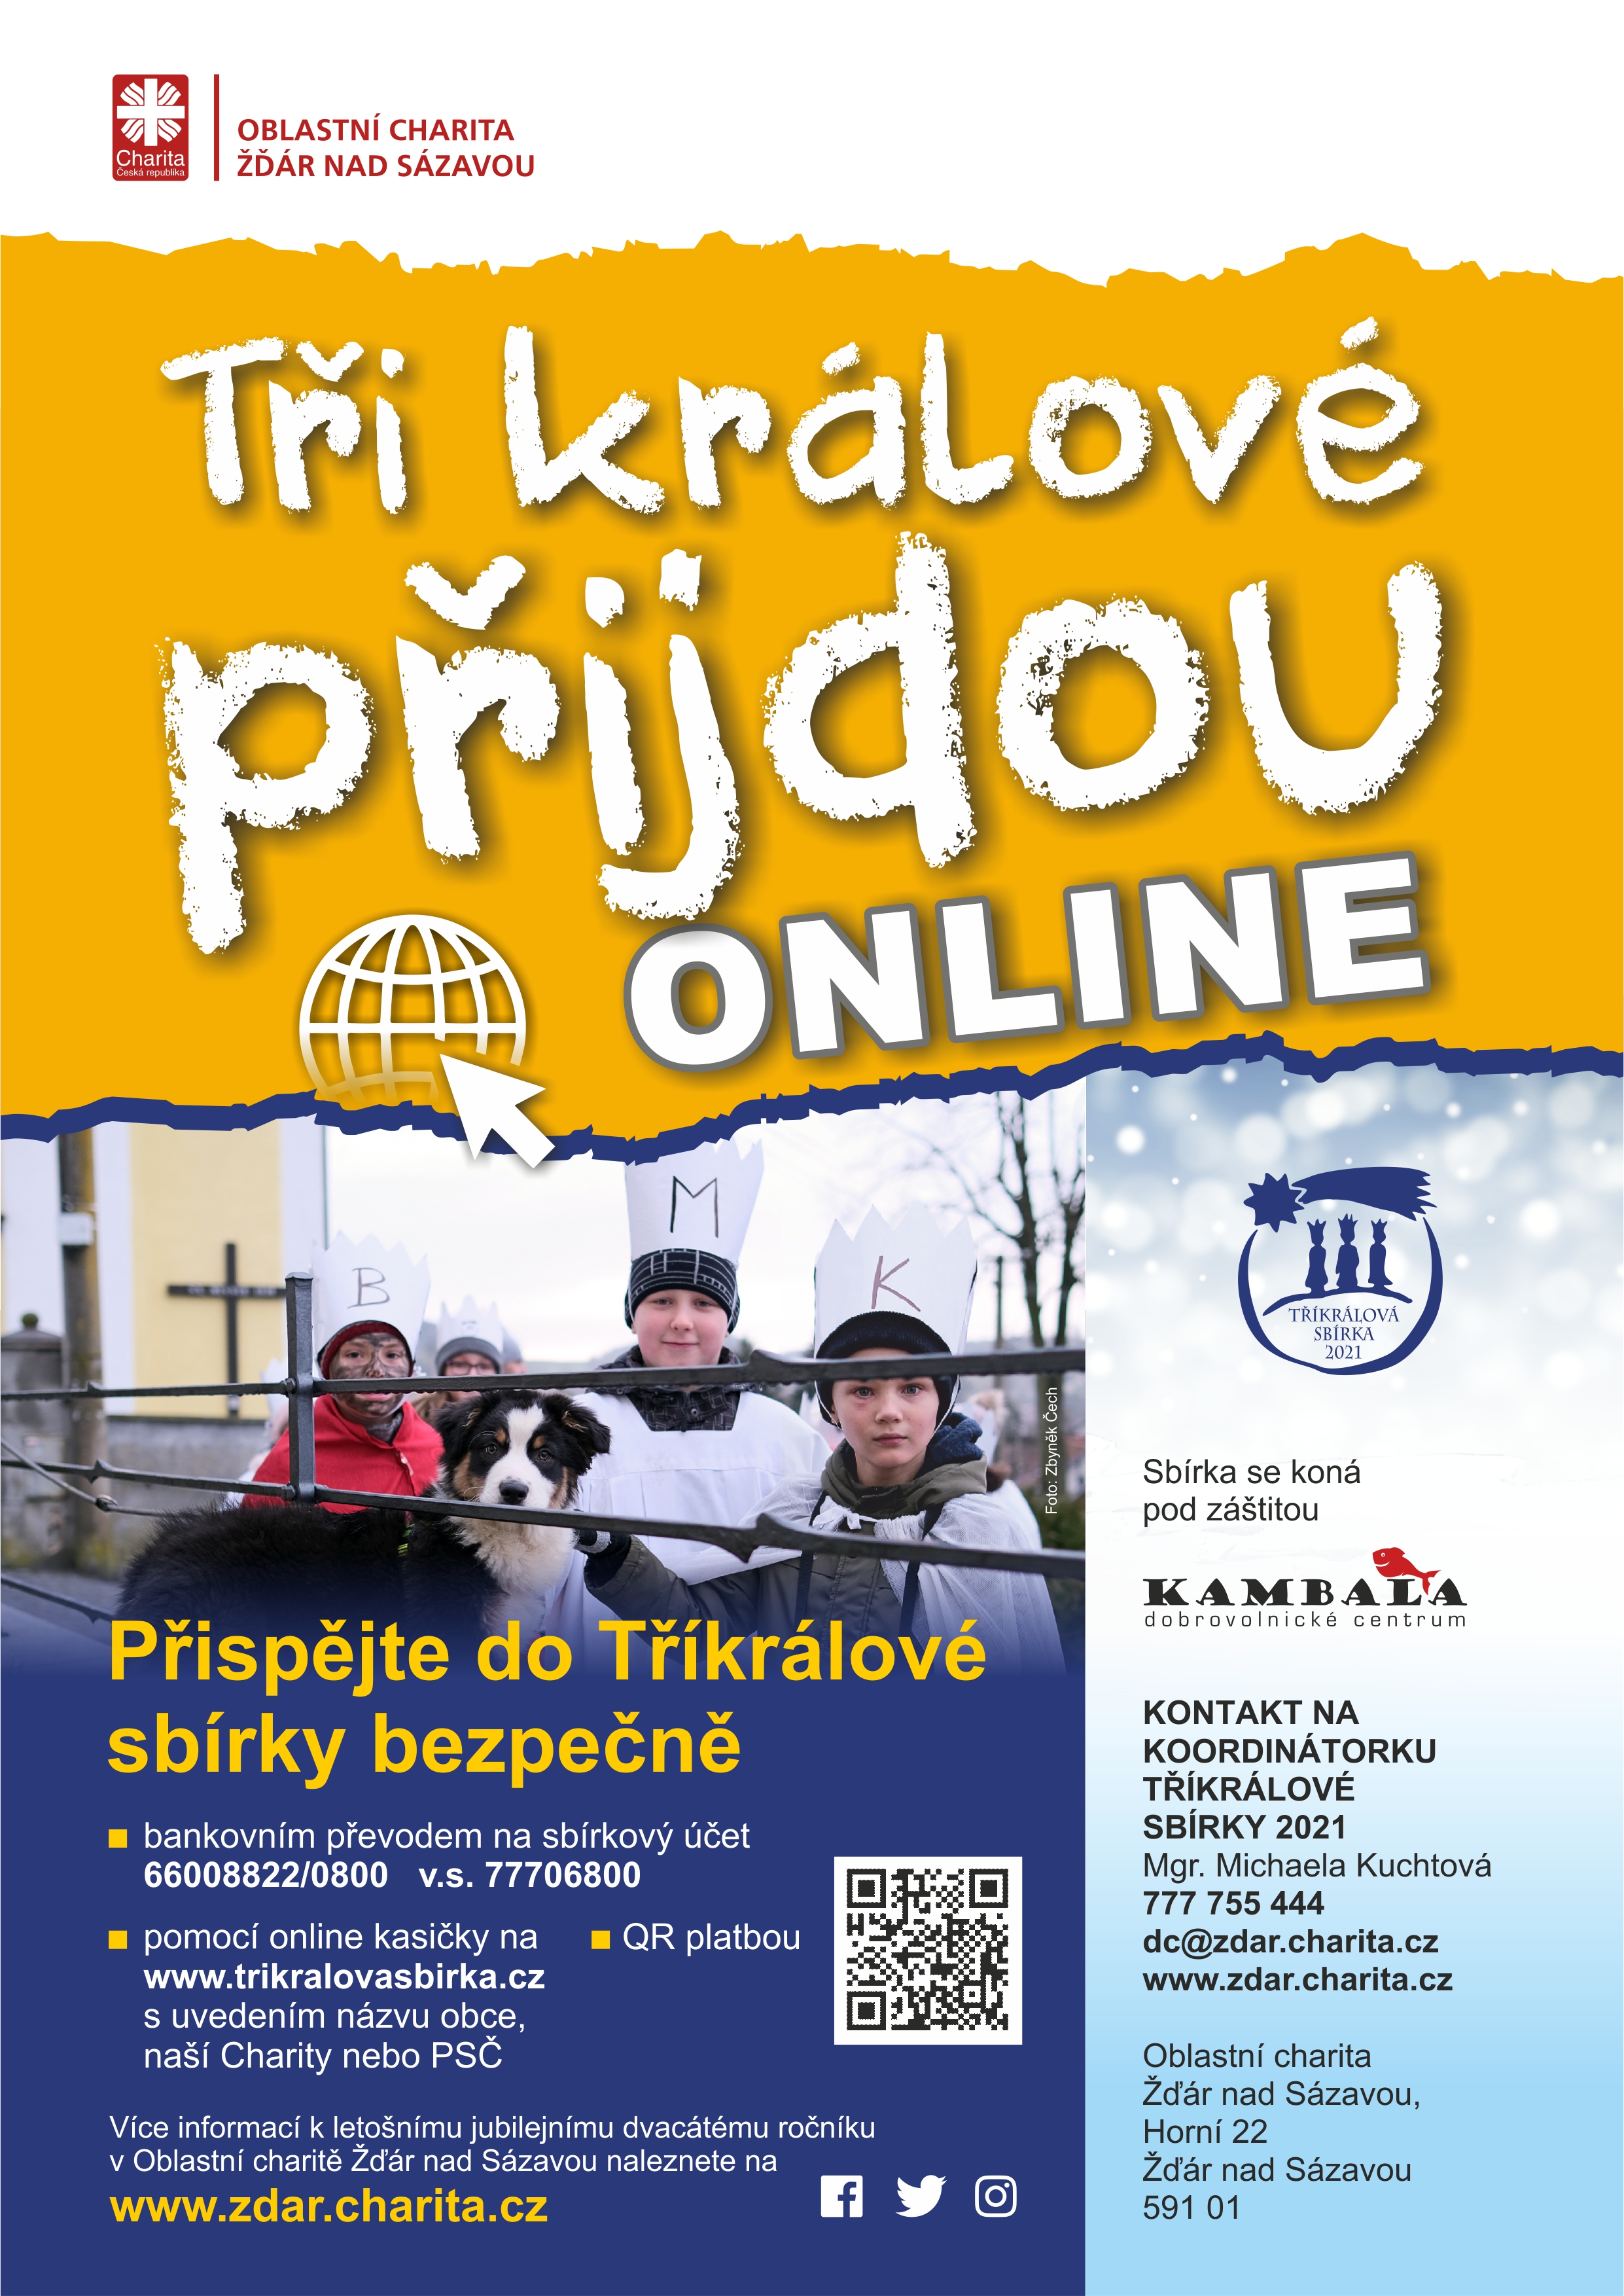 TrikralovaSbirka-online-letak